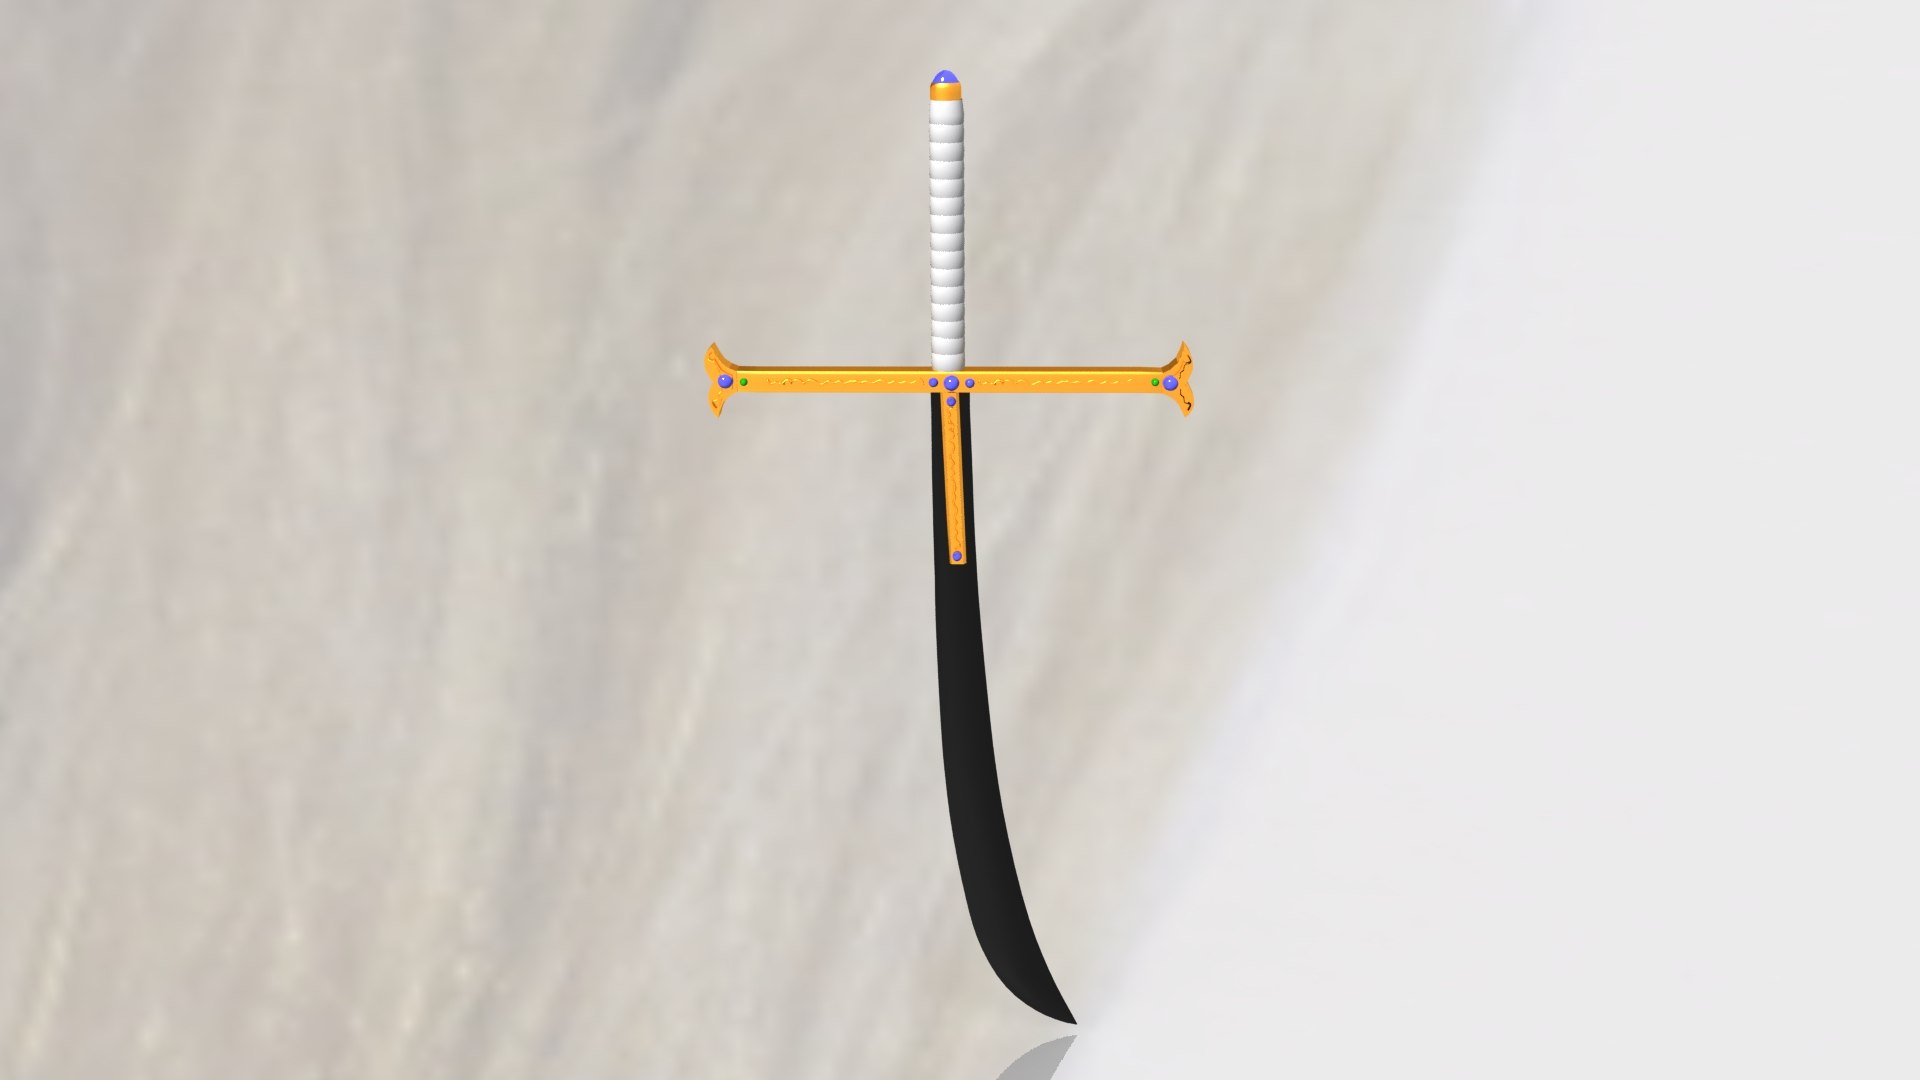 Kokuto yoru swords mihawk 3D model - TurboSquid 1191014